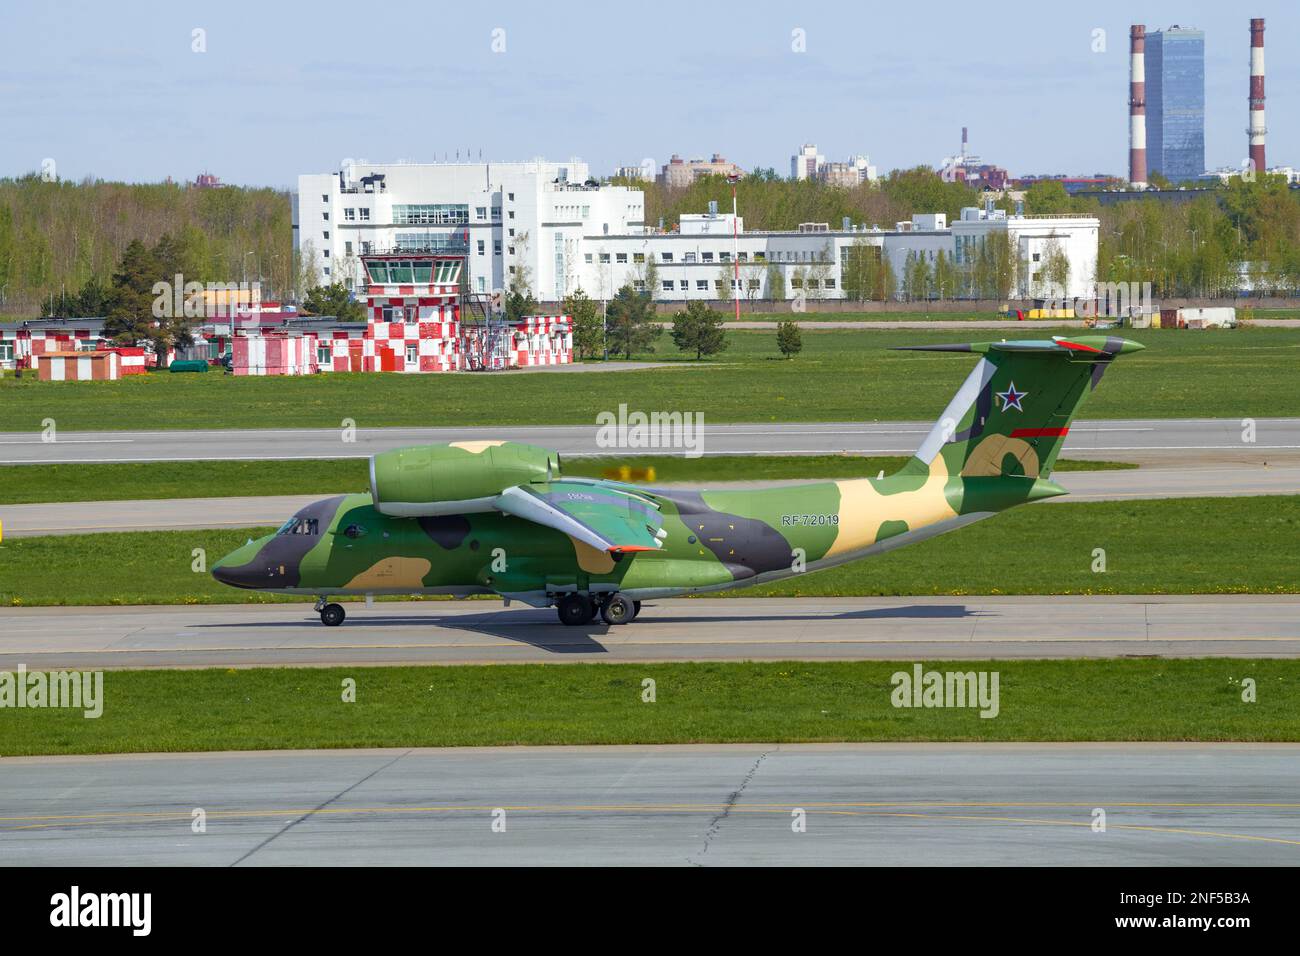 SAINT-PÉTERSBOURG, RUSSIE - 20 MAI 2022 : avion de transport militaire russe an-72P (RF-72019) à l'aéroport de Pulkovo, le jour ensoleillé de mai Banque D'Images